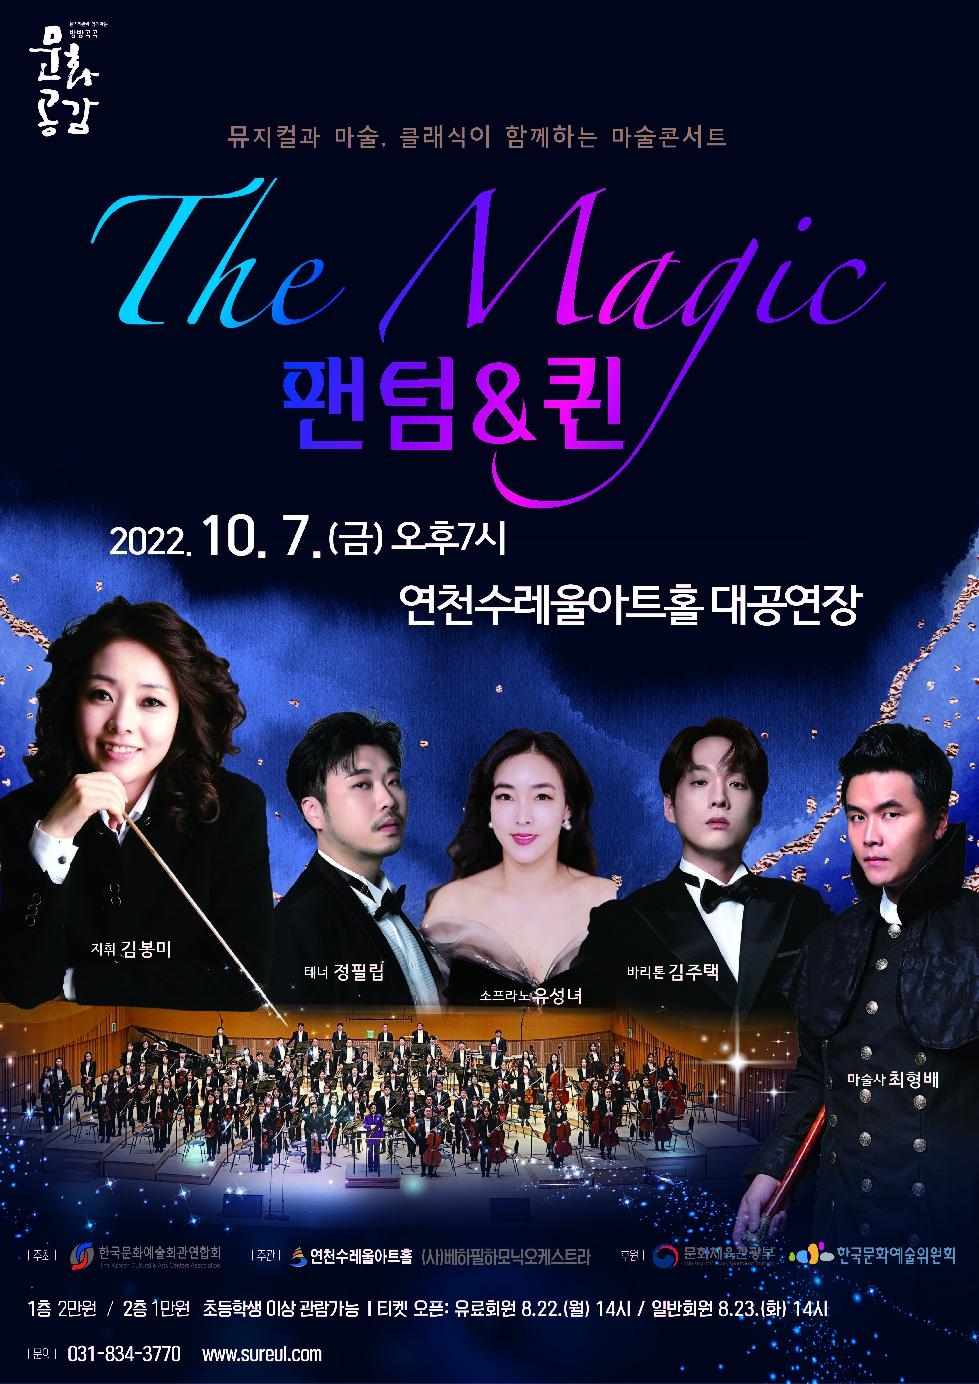 마술콘서트 ‘The Magic 팬텀&퀸’ 오는 7일 연천수레울아트홀서 선보여